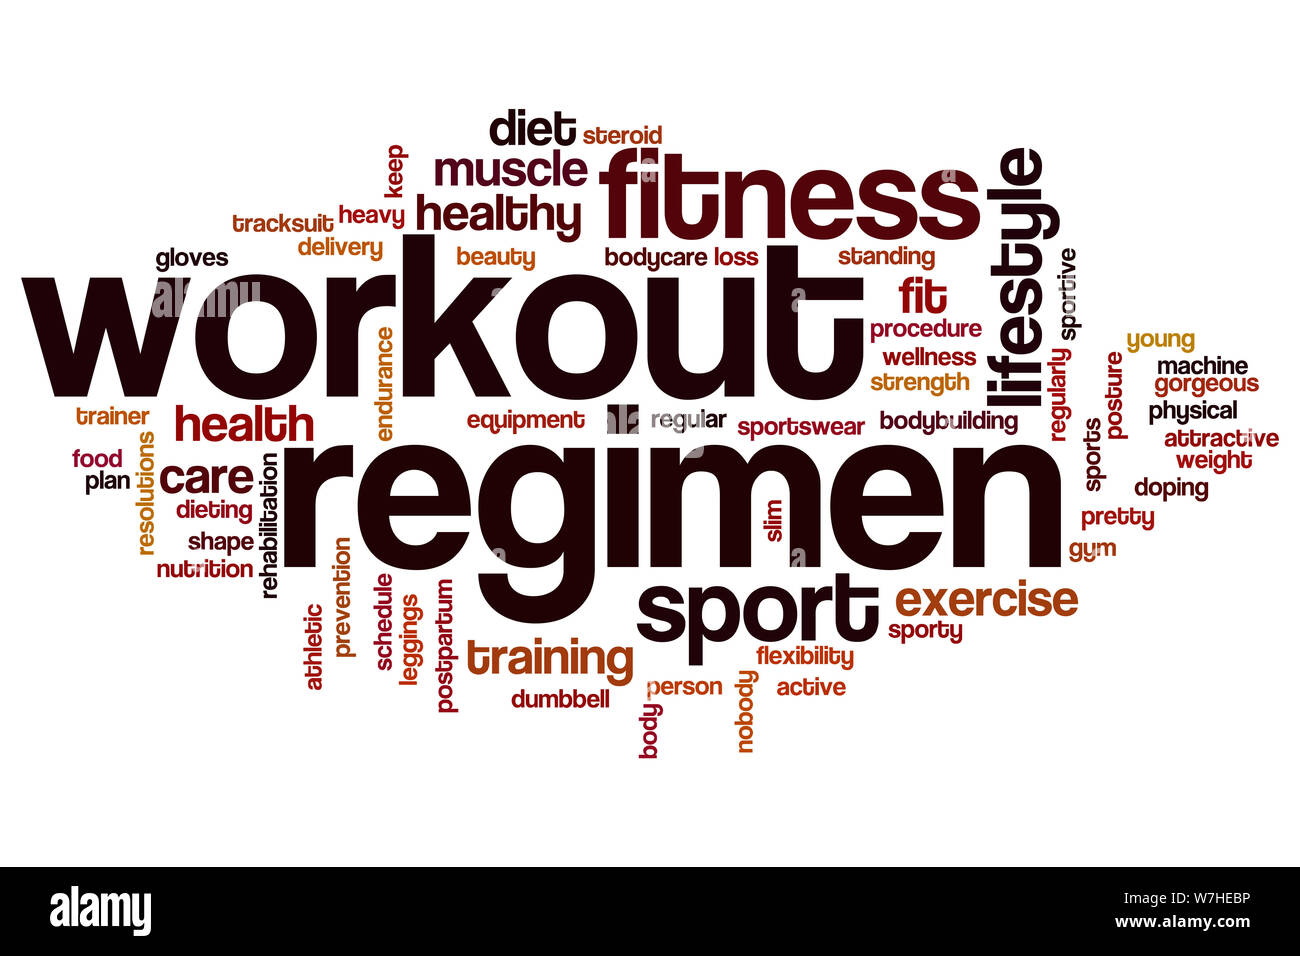 Workout Regimen Word Cloud Concept Stock Photo Alamy